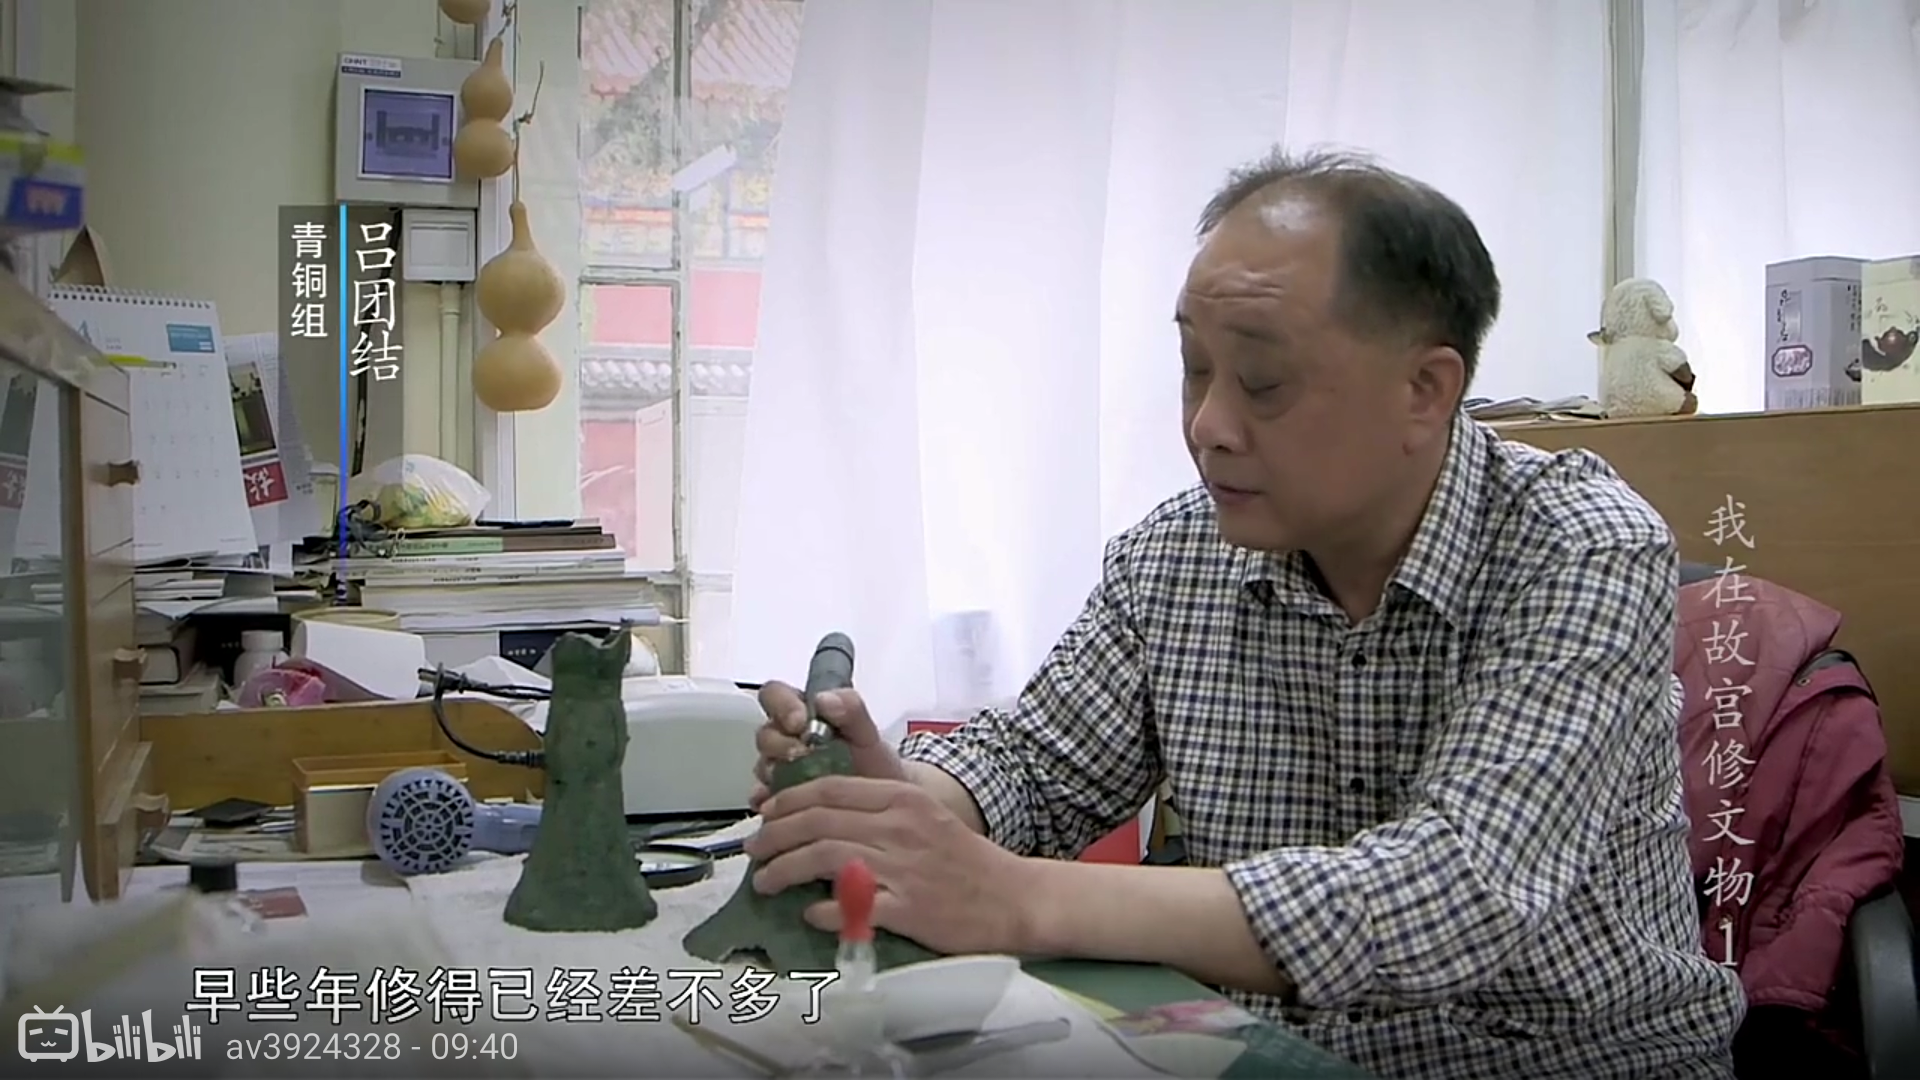 中国有哪些展现出『工匠精神』的人物事迹?